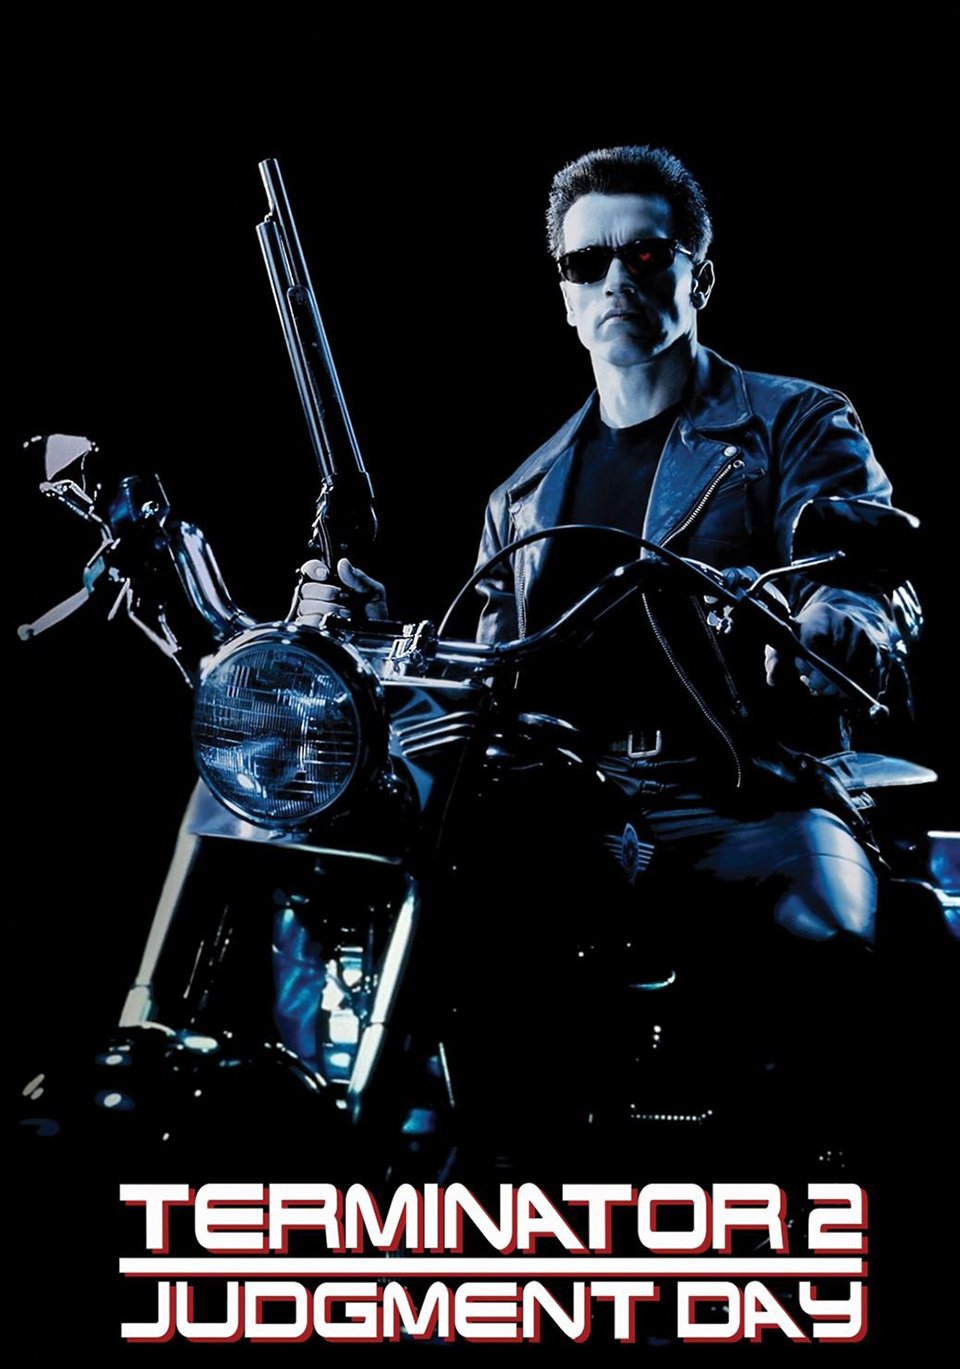 Terminator 2 Harley-Davidson Fat Boy